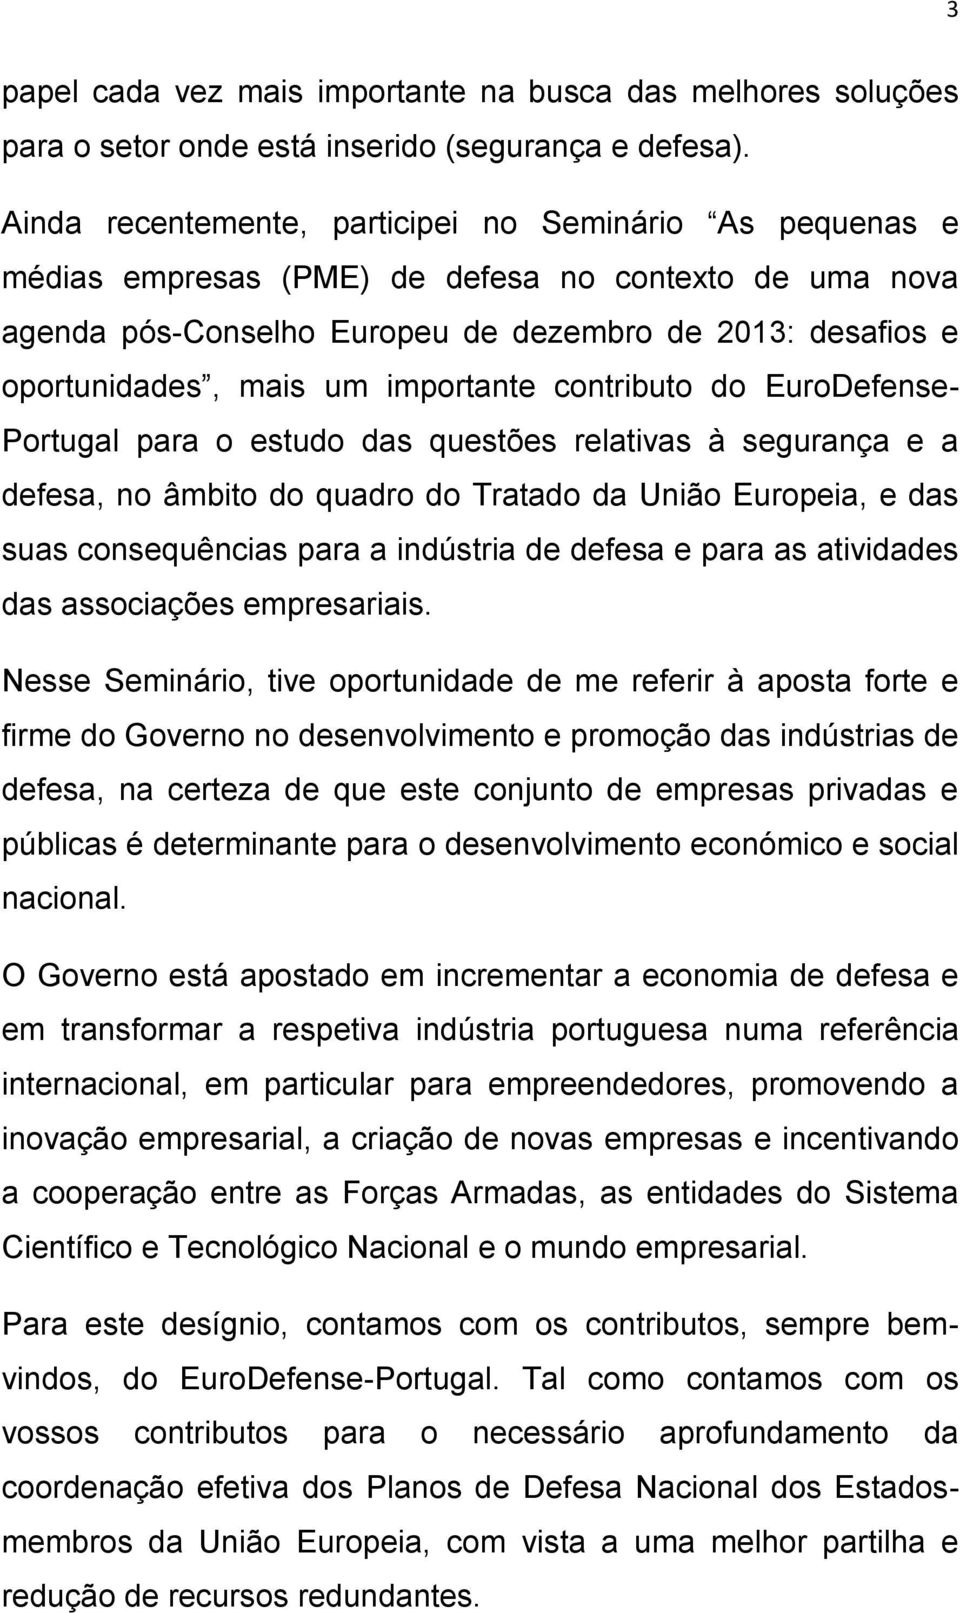 importante contributo do EuroDefense- Portugal para o estudo das questões relativas à segurança e a defesa, no âmbito do quadro do Tratado da União Europeia, e das suas consequências para a indústria